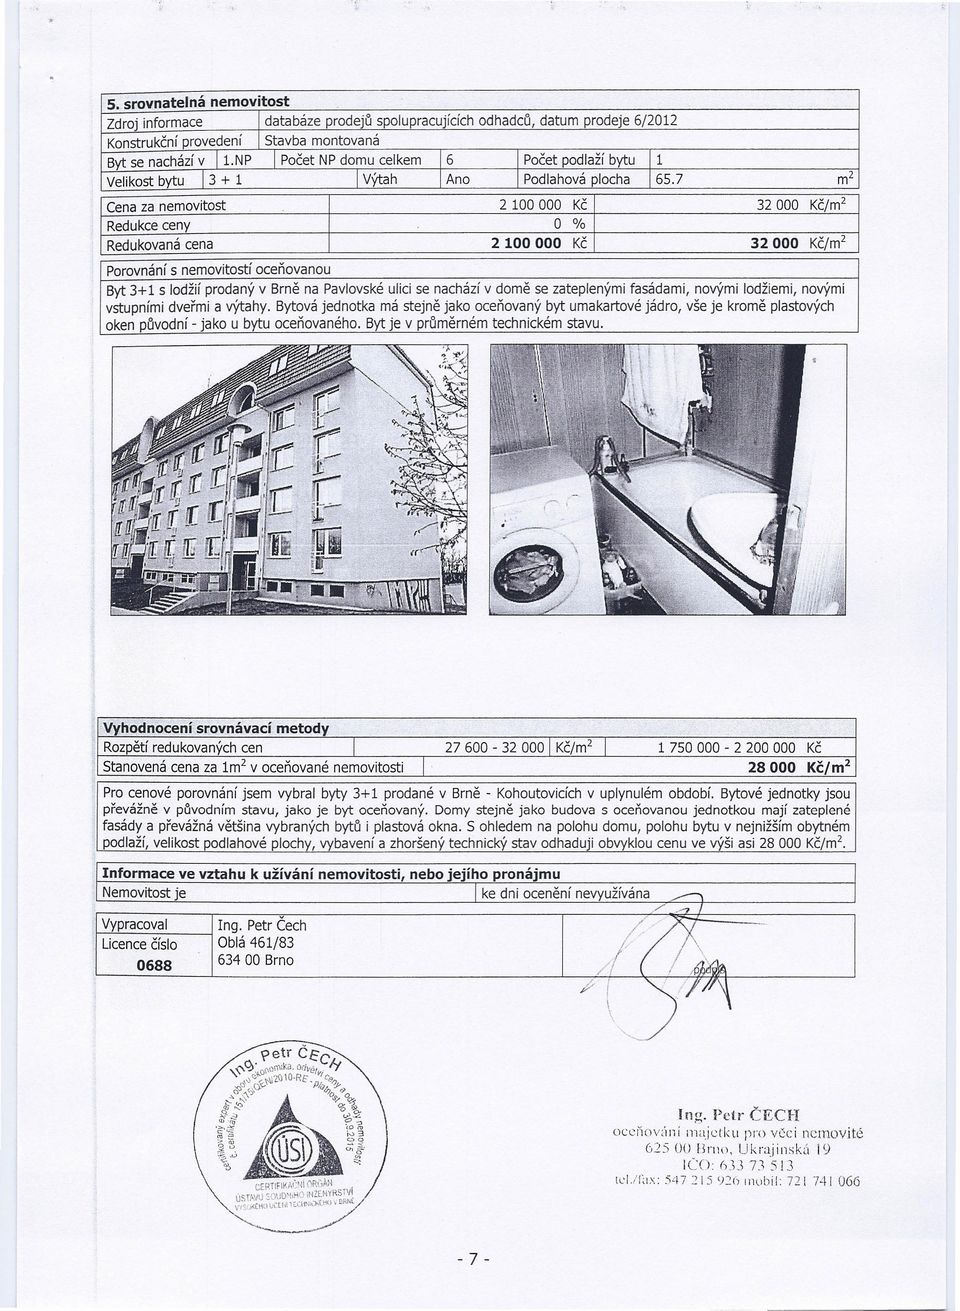 7 Ano Velikost bytu 13 + 1 m2 2 100000 O % 2100000 Cena za nemovitost Redukce ceny Redukovaná cena 32000 /m2 32000 /m2 Porovnání s nemovitostí oceňovanou Byt 3+ 1 s lodžií prodaný v Brně na Pavlovské